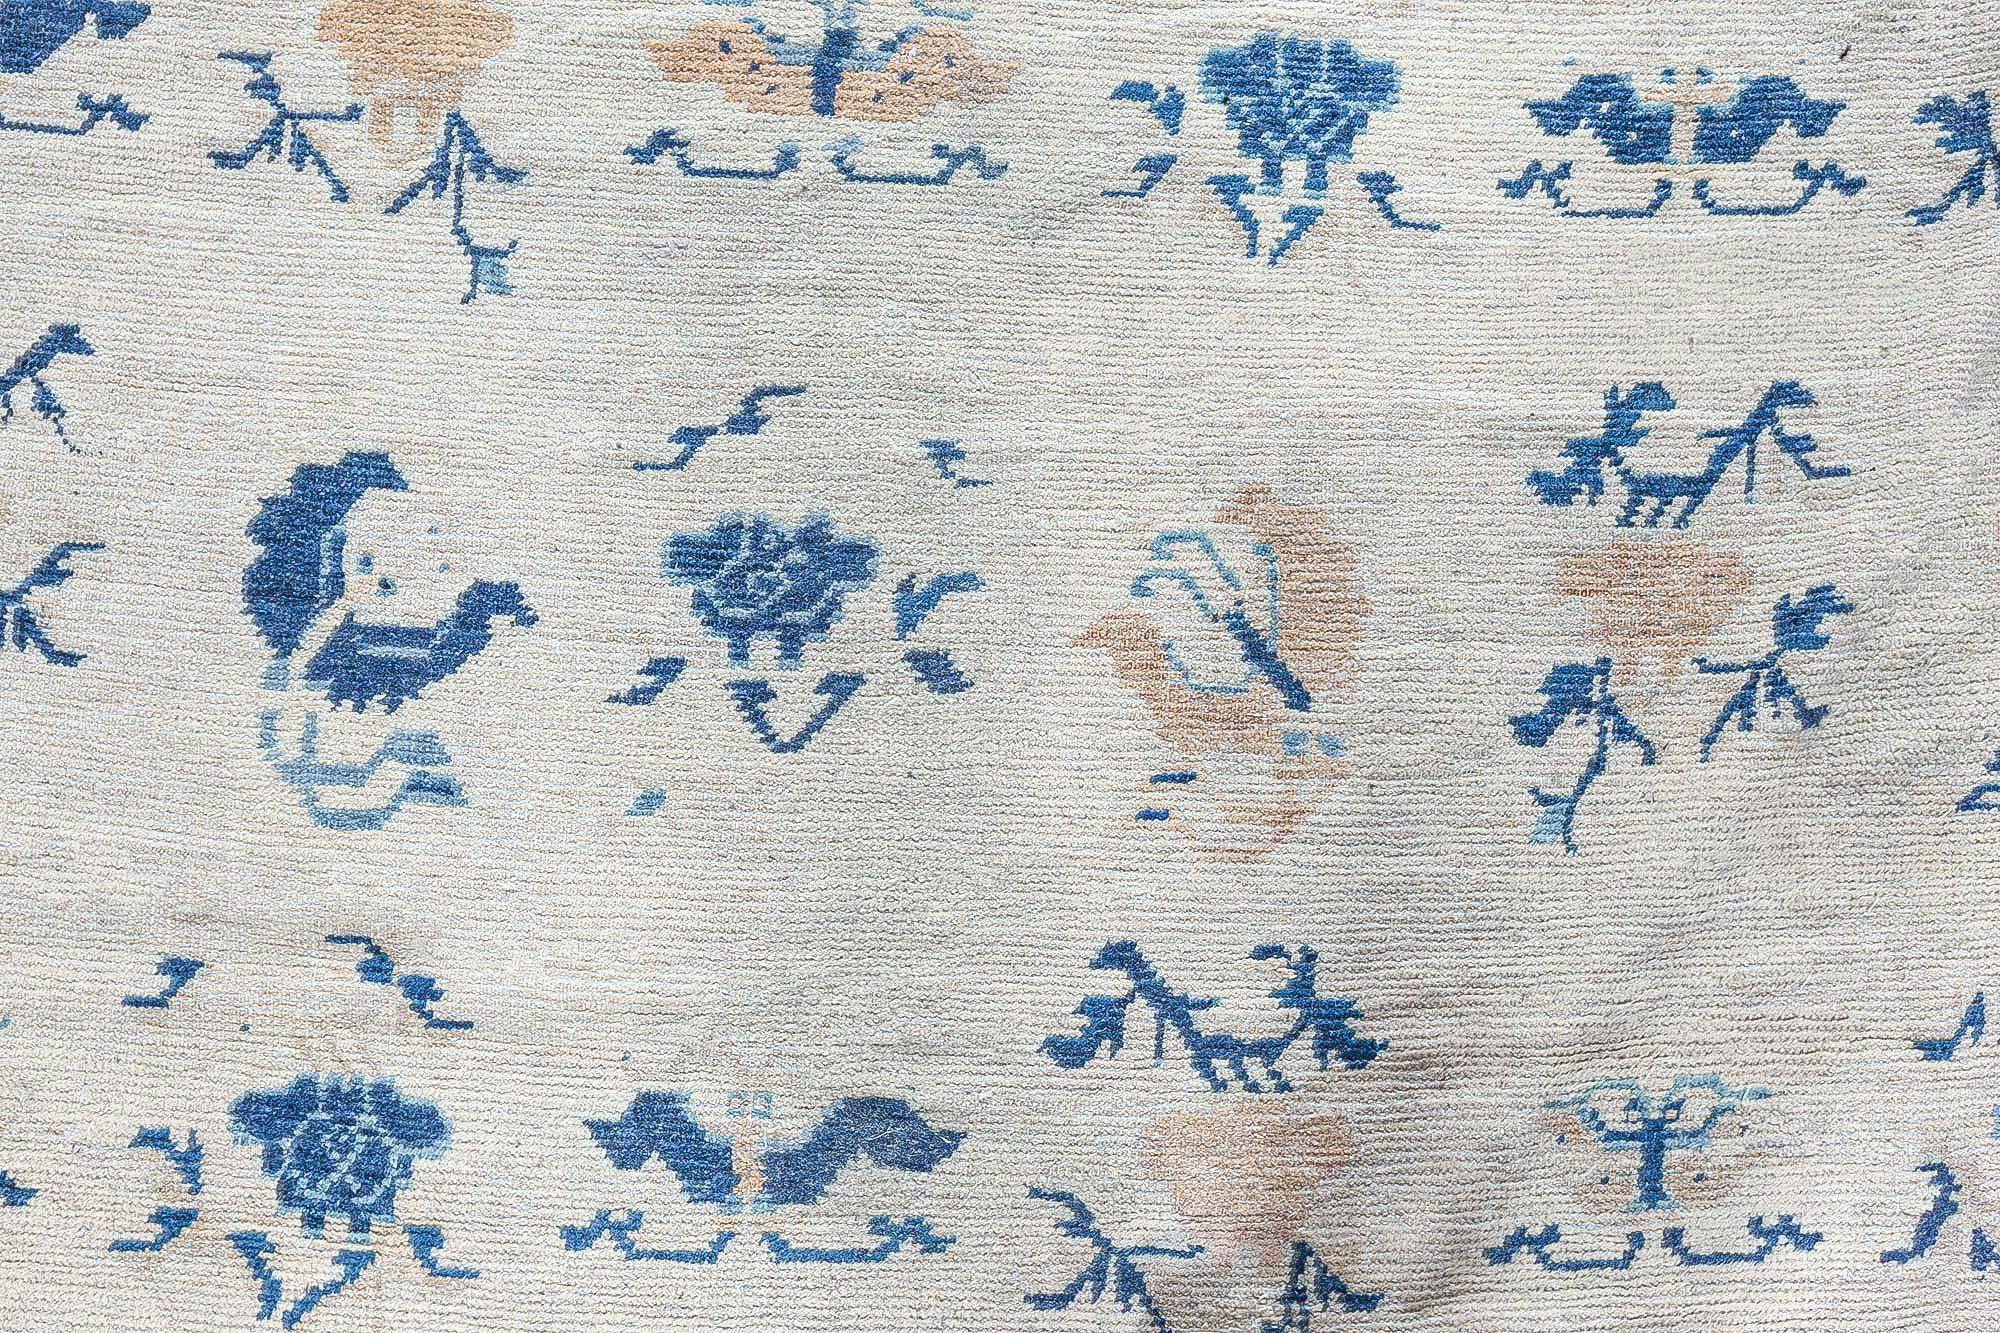 Authentic 19th Century Chinese Botanic Wool Rug
Size: 12'4